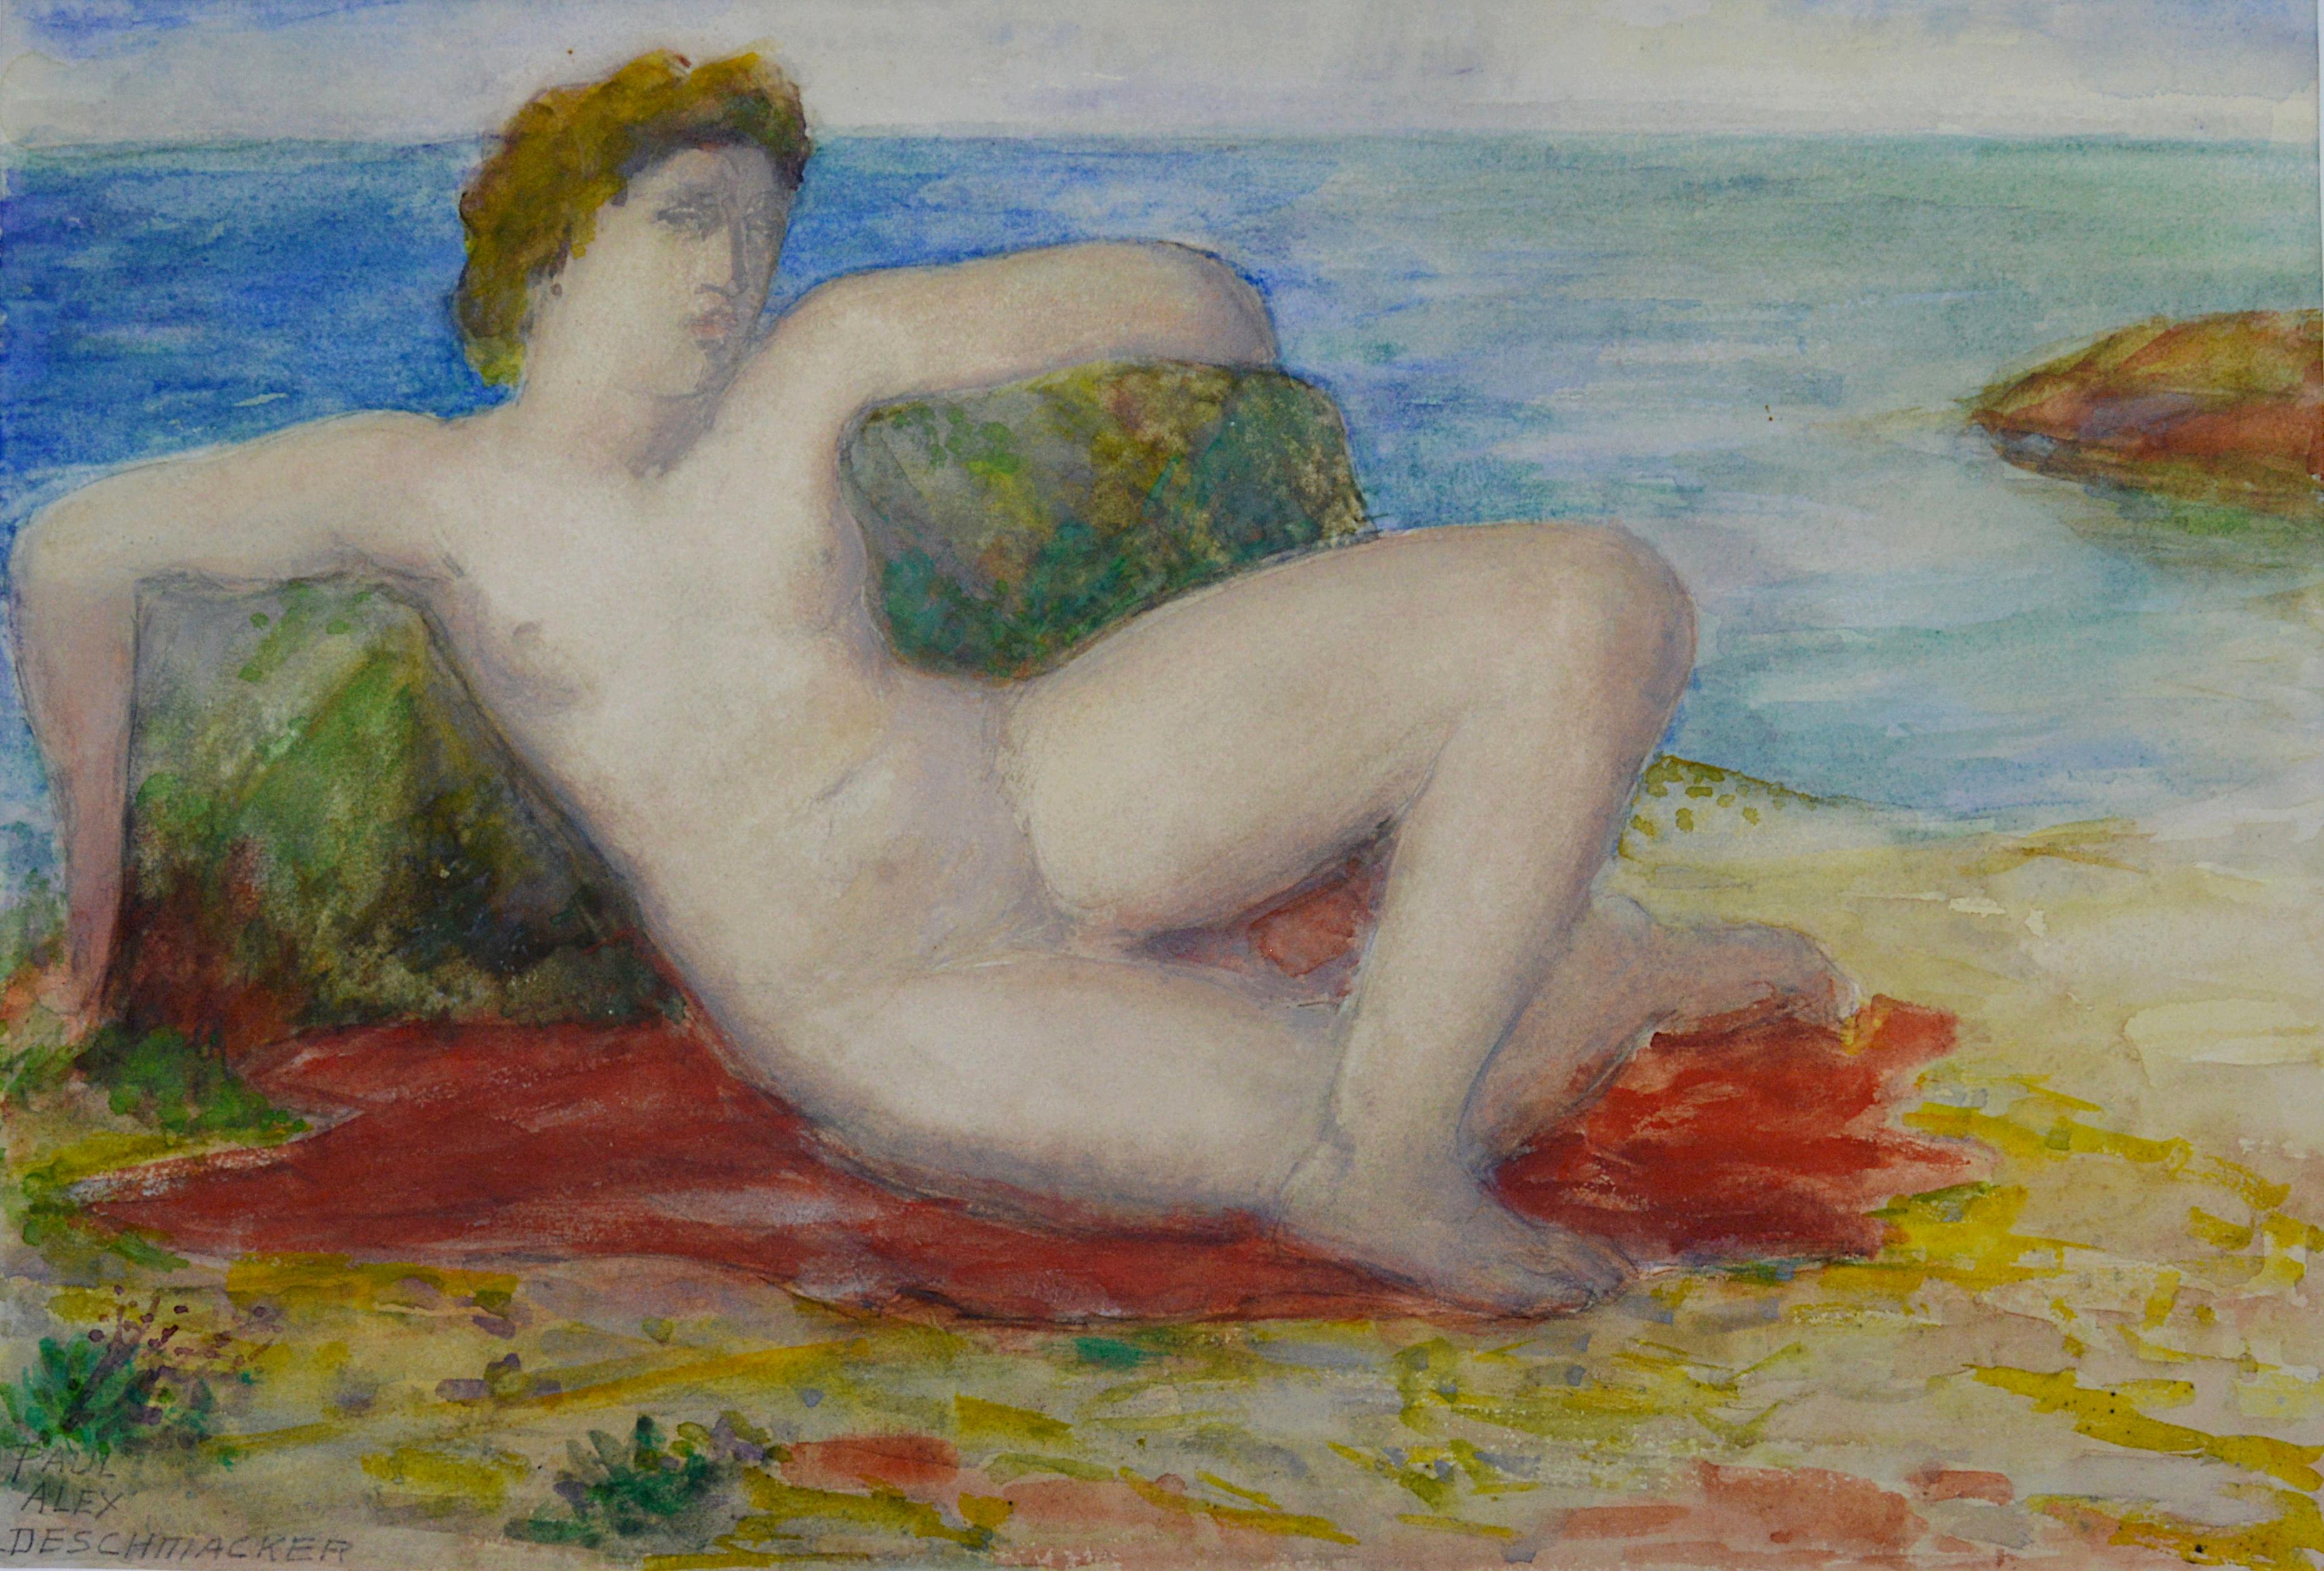 Figurative Art Paul Alex Deschmacker - Deschmacker, Jeune femme allongée au bord de la mer, aquarelle